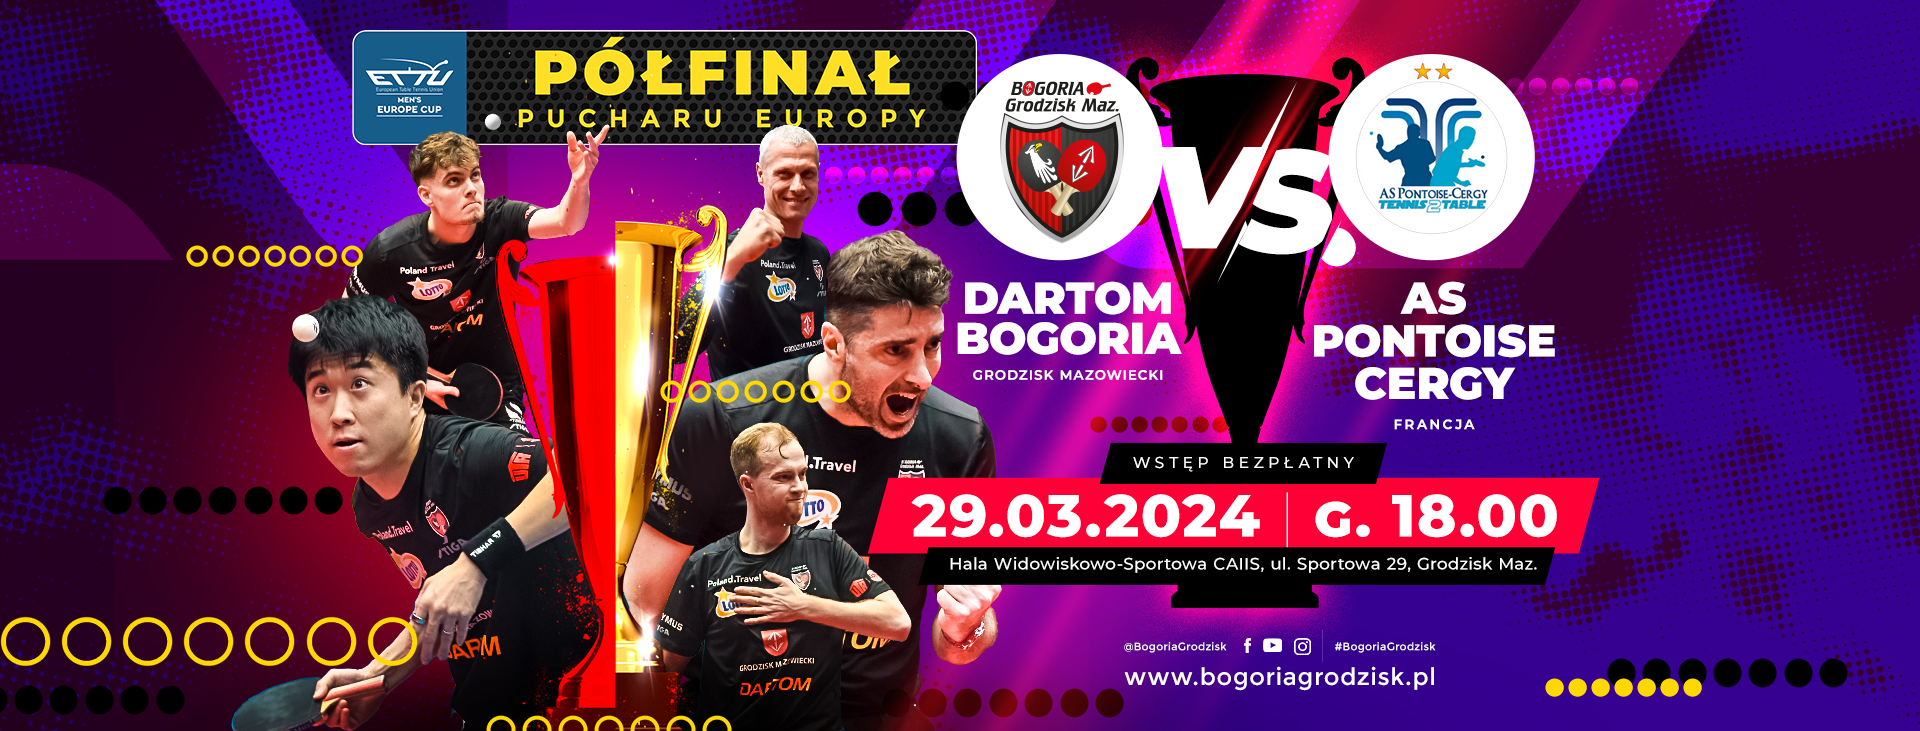 Półfinał Pucharu Europy: Dartom Bogoria Grodzisk Mazowiecki vs. AS Pontoise-Cergy - godz. 18:00, Hala Widowiskowo-Sportowa CAiIS